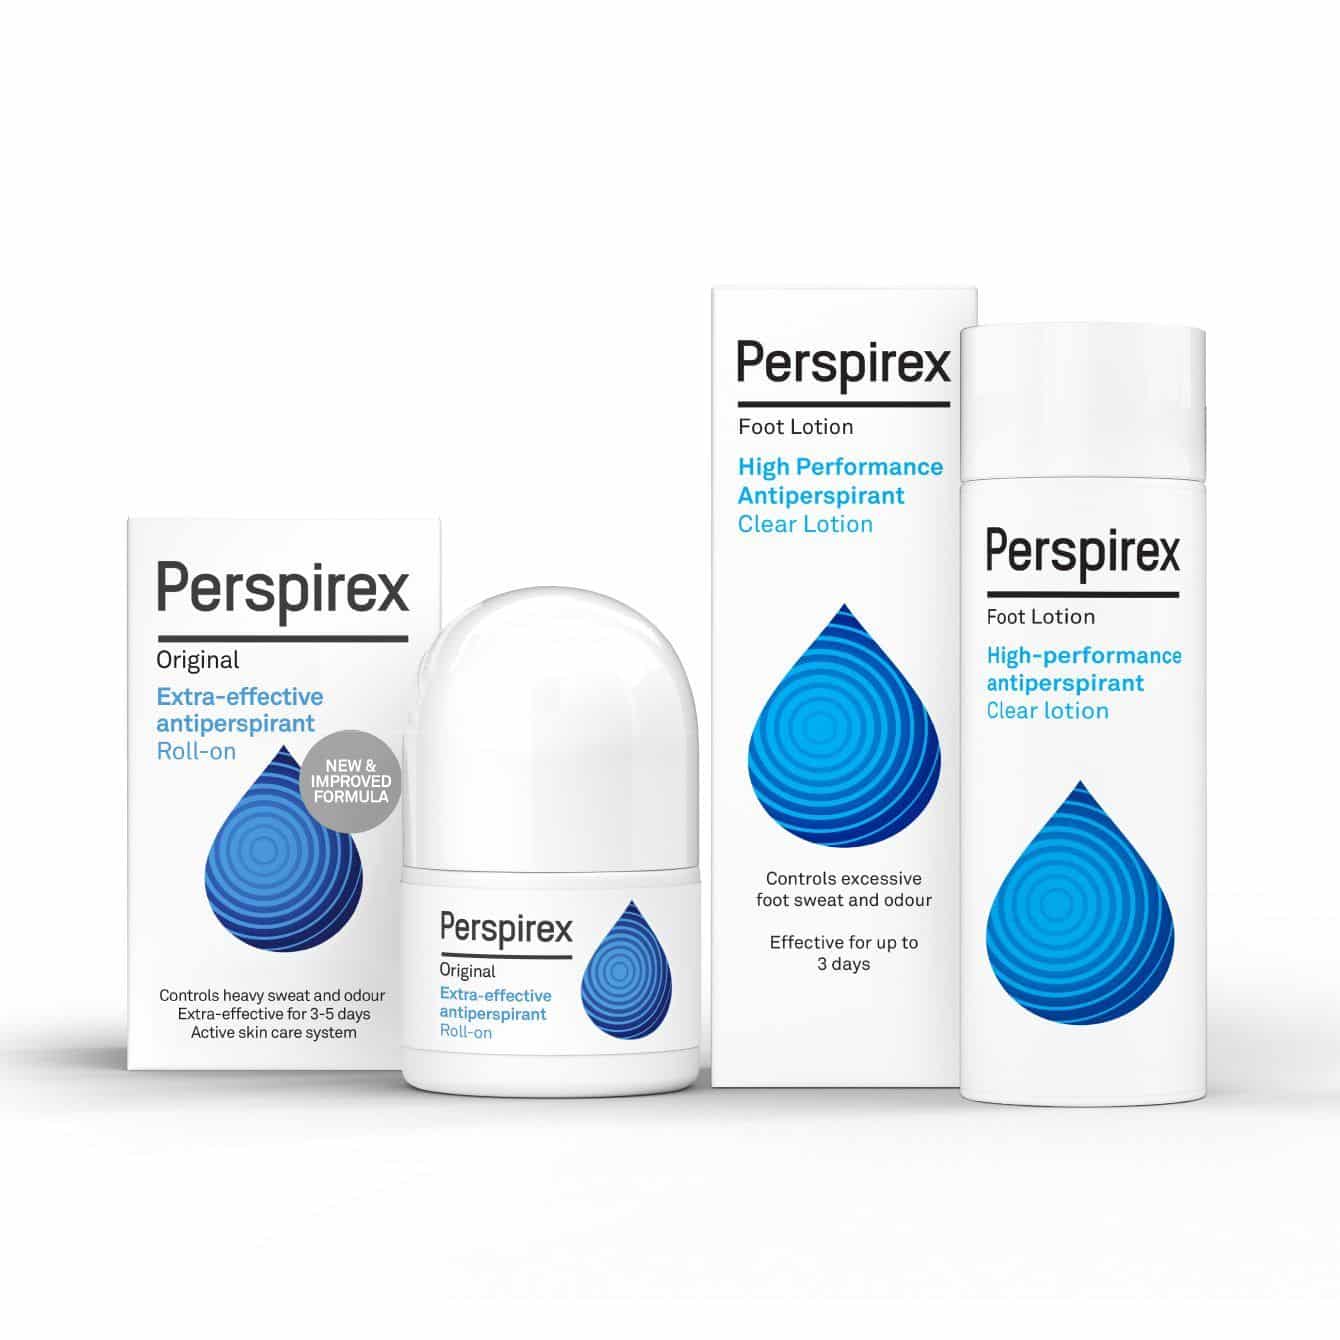 Perspirex Comfort - Antitranspirante para sudoración leve